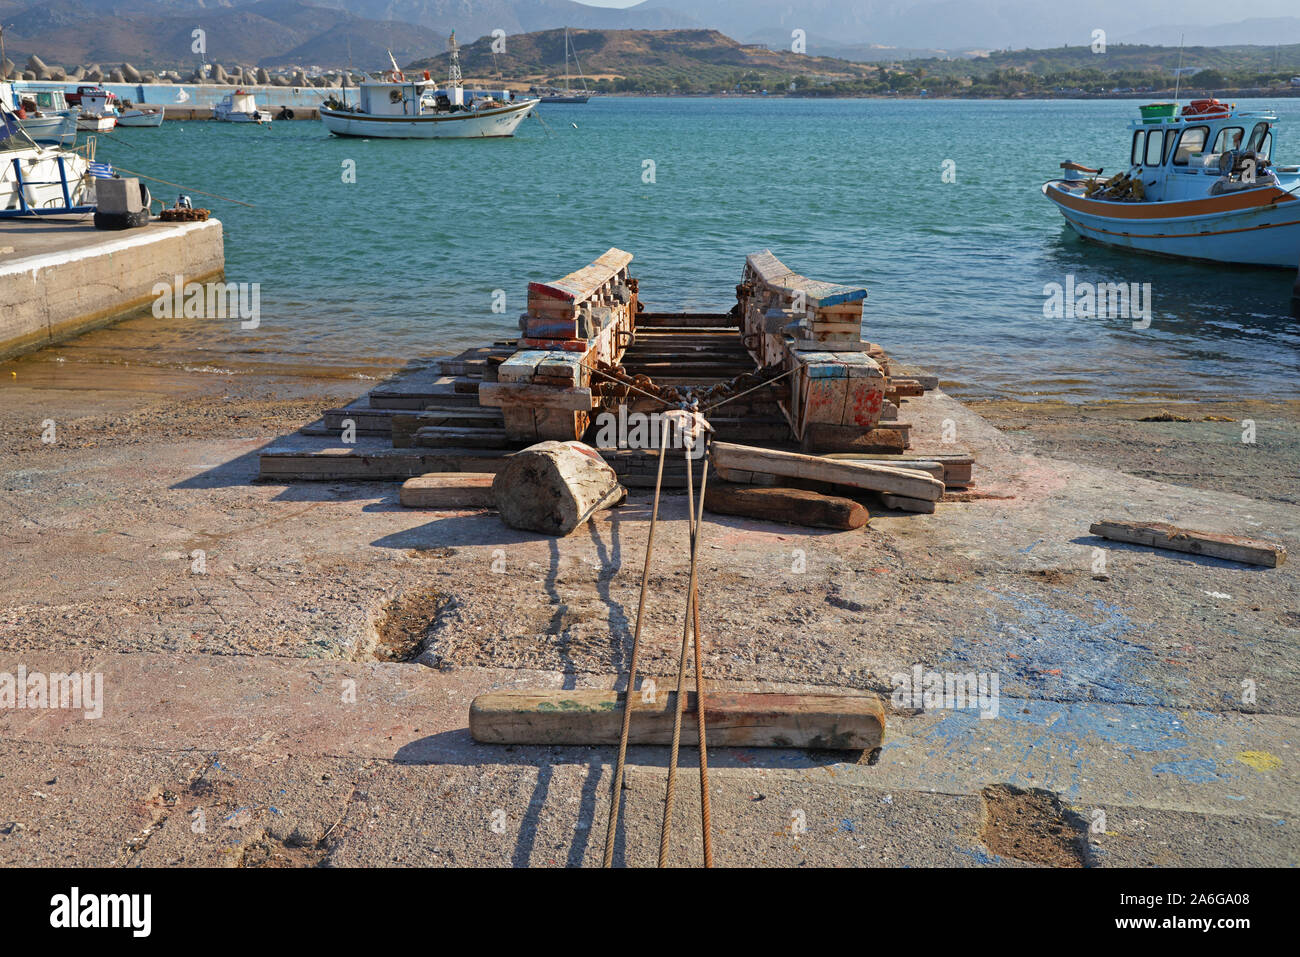 Artilugios improvisados utilizado para remolcar botes de pesca fuera de las aguas en Kouremenos haven, Creta, Grecia. Foto de stock